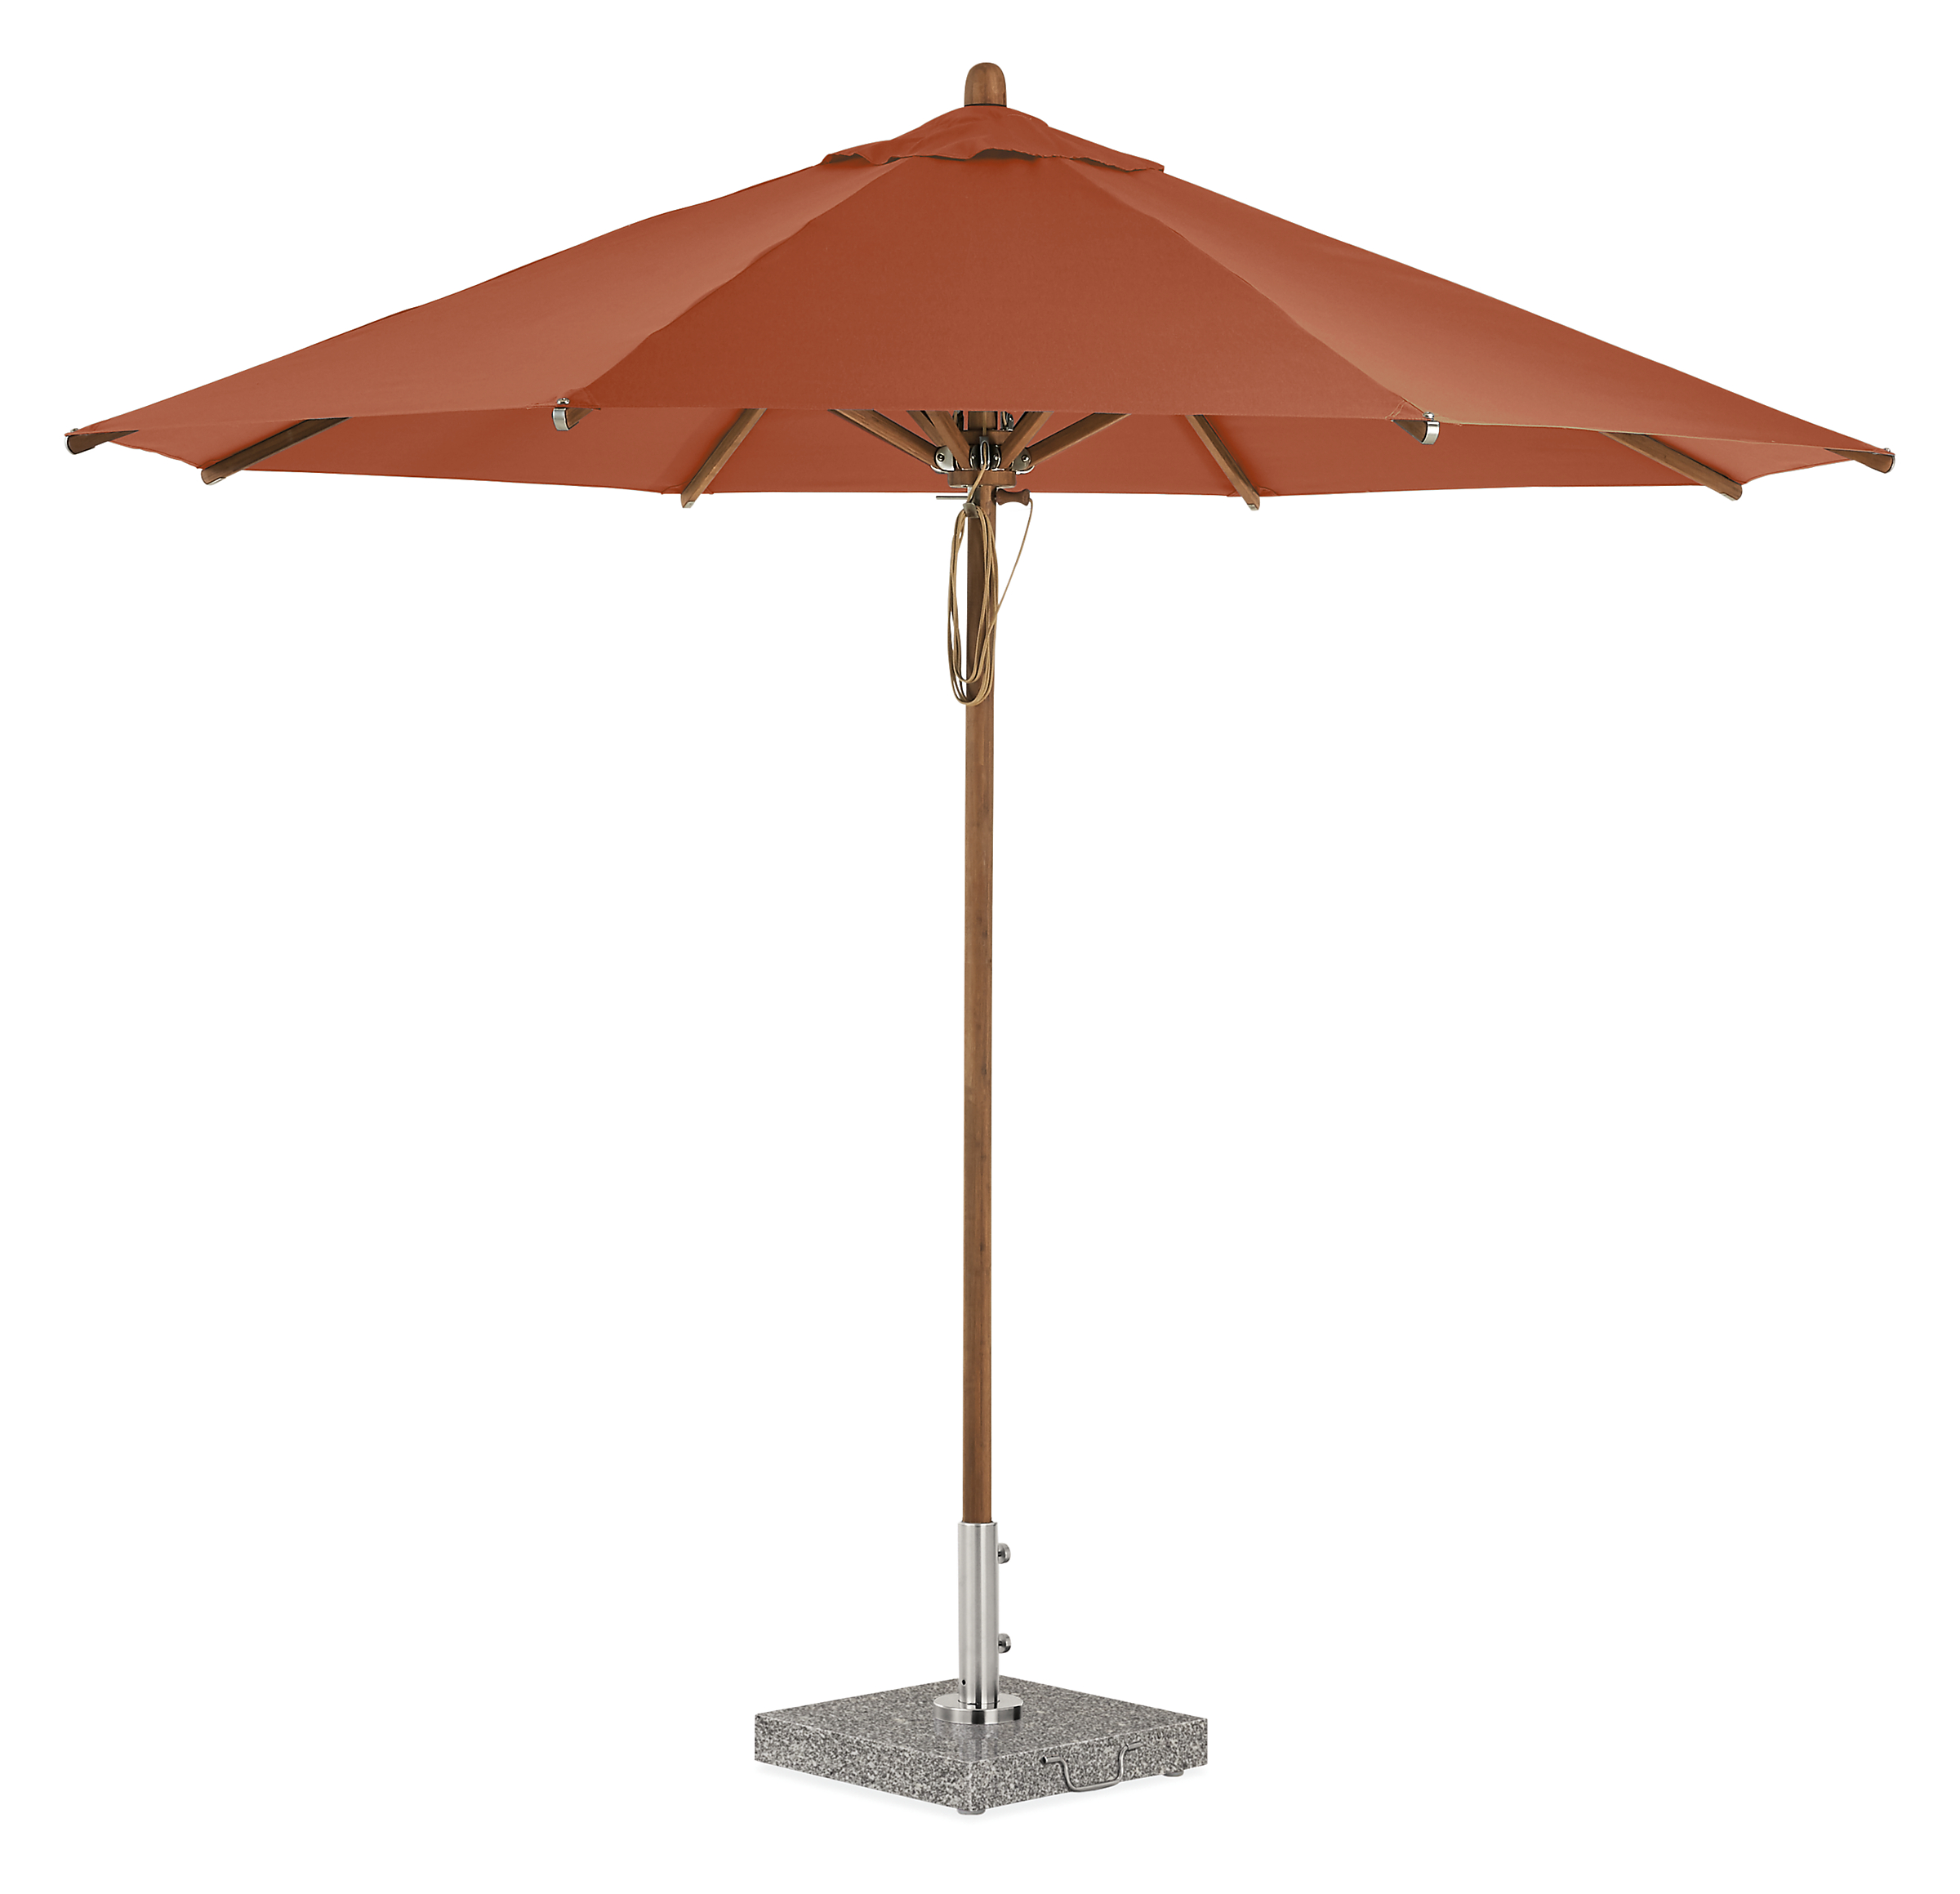 Cirro 10' Patio Umbrella in Terracotta with Bamboo Pole